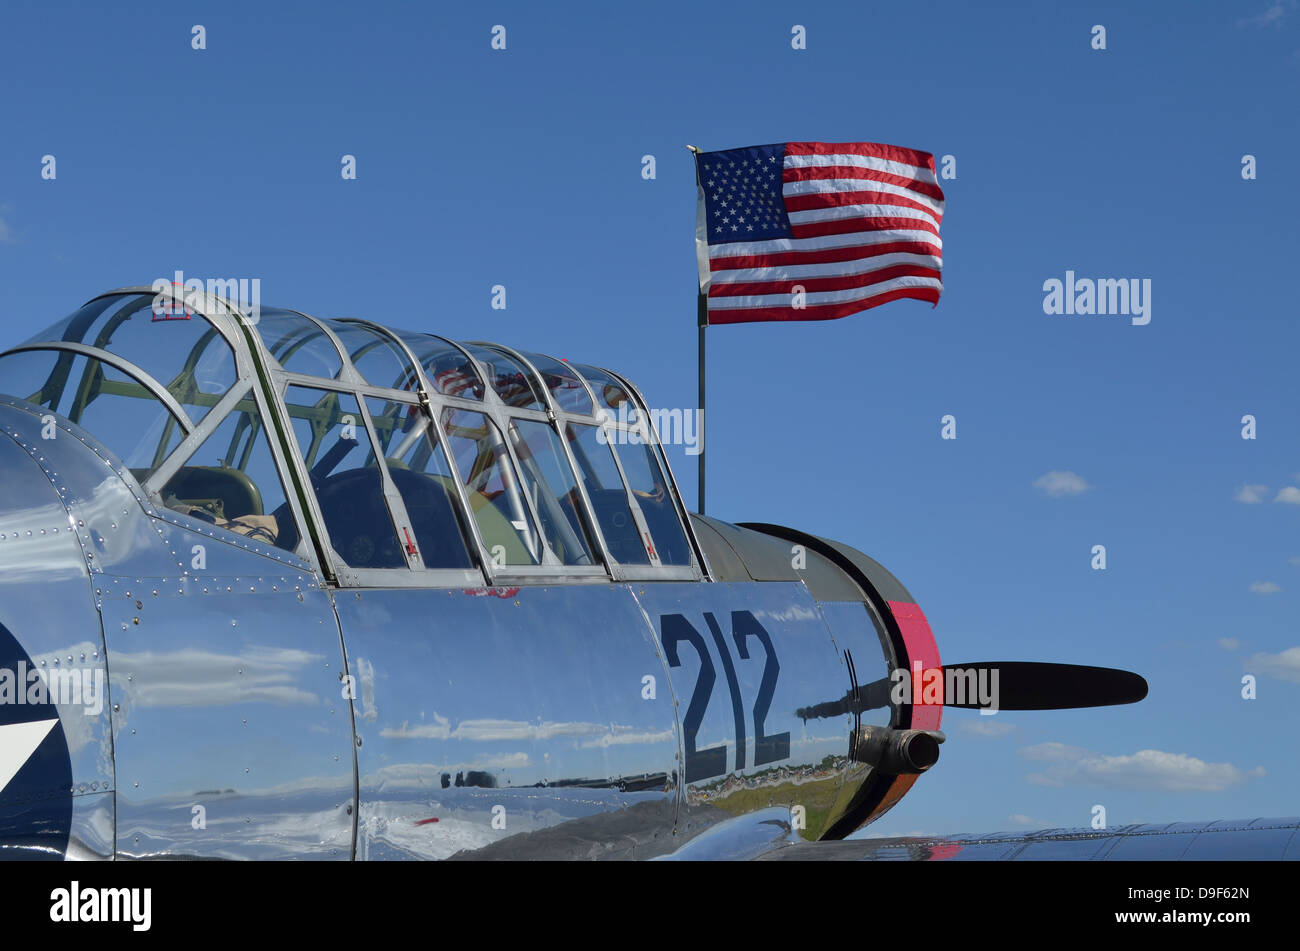 Un BT-13 Valiant trainer aeromobili con bandiera americana. Foto Stock